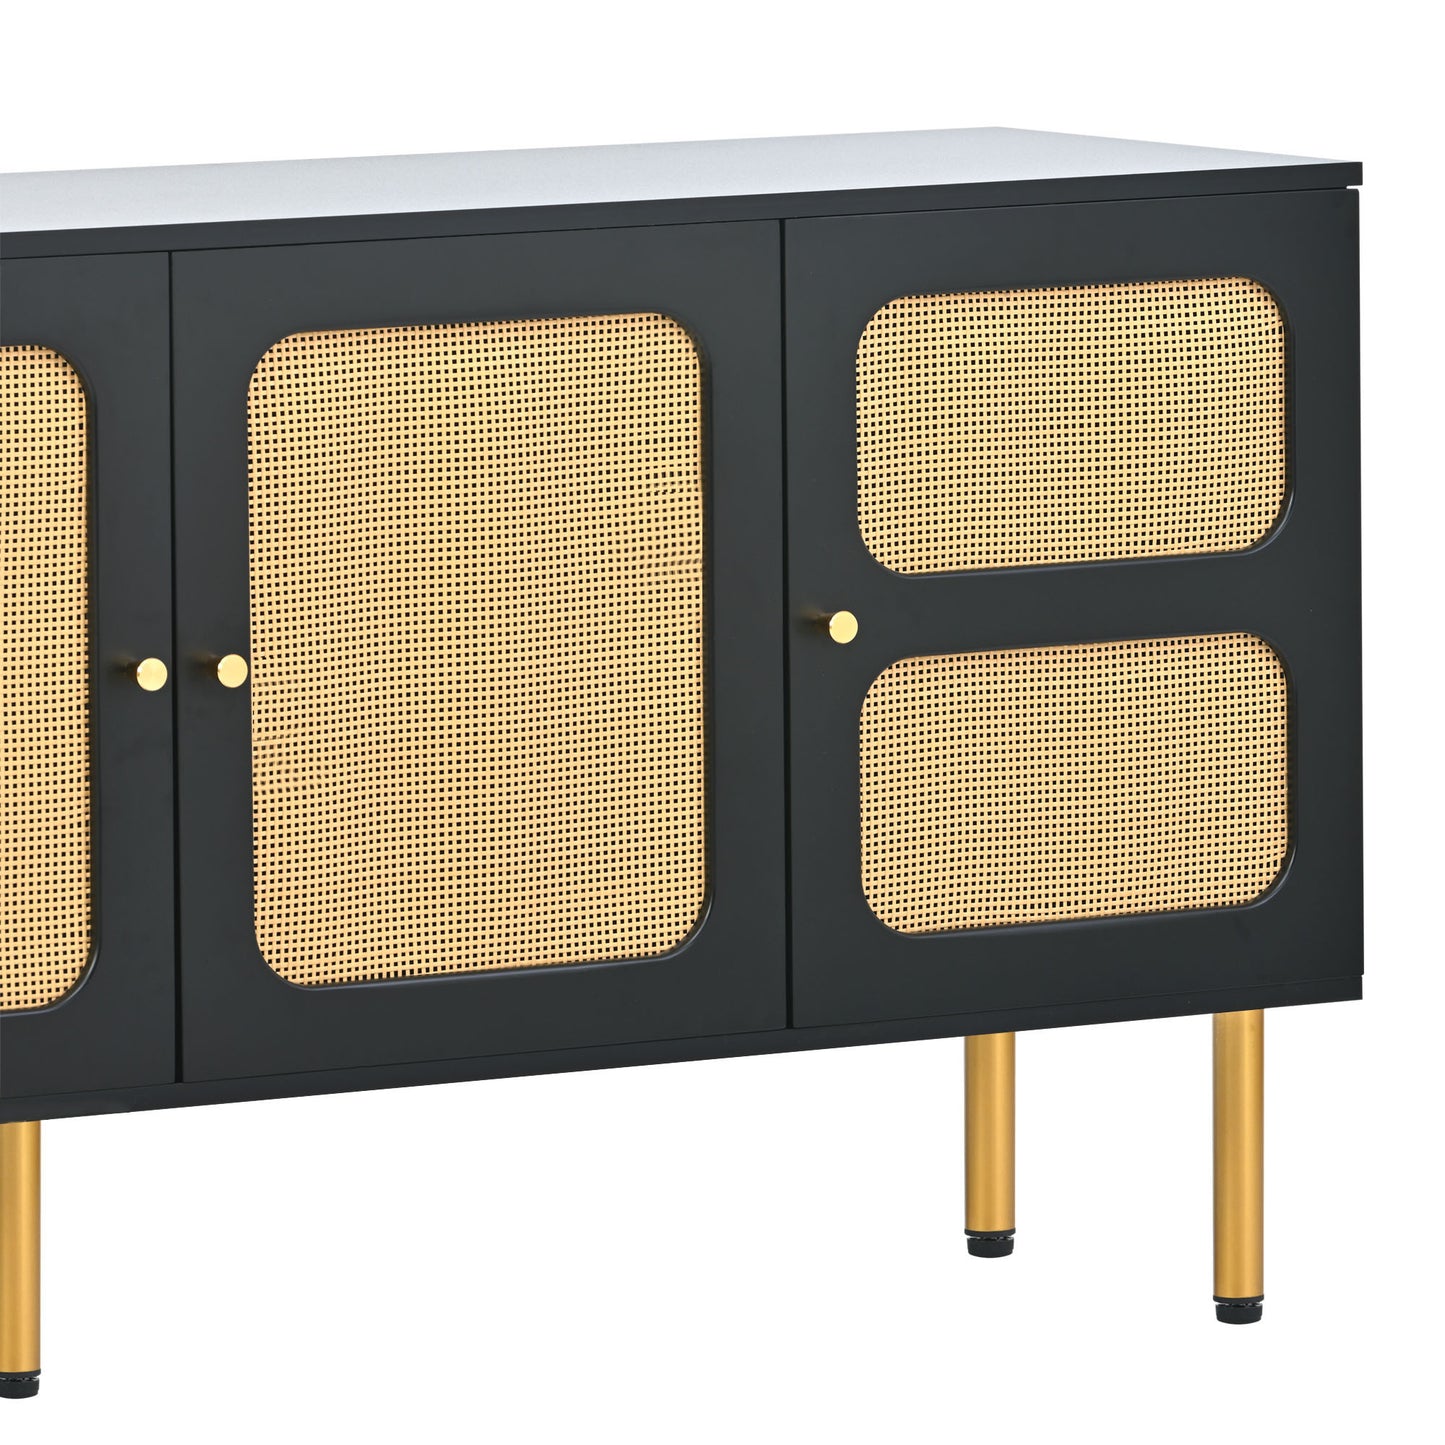 Meuble TV de style bohème ON-TREND avec porte en rotin, table console multimédia tissée pour téléviseurs jusqu'à 70", panneau latéral de style campagnard avec base en métal doré pour le salon, noir.